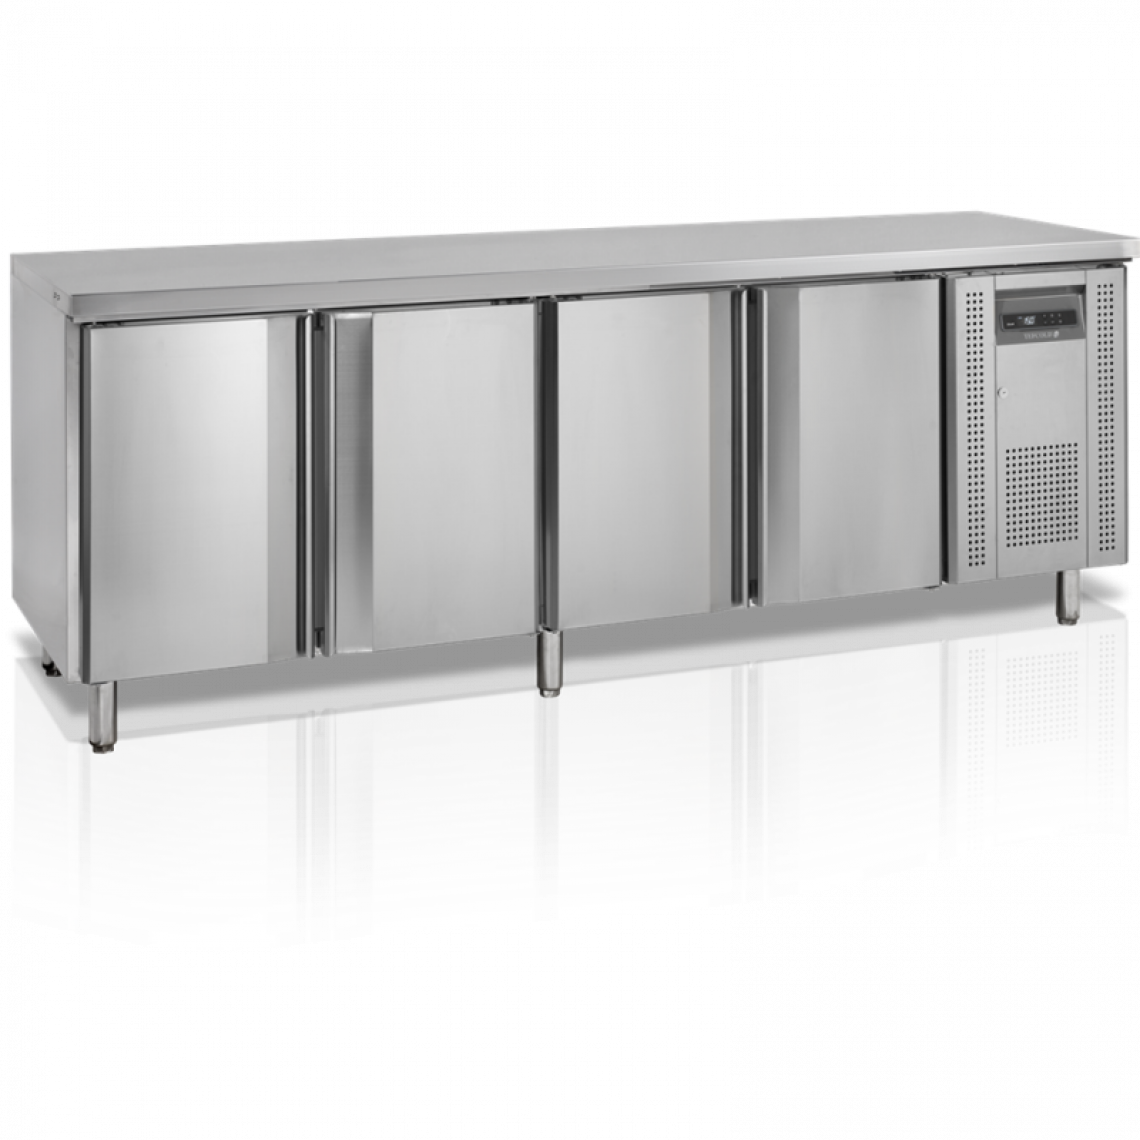 Tefcold - Refroidisseur de Comptoir SK6410 - TEFCOLD - R600a4 PortesBattante - Réfrigérateur américain